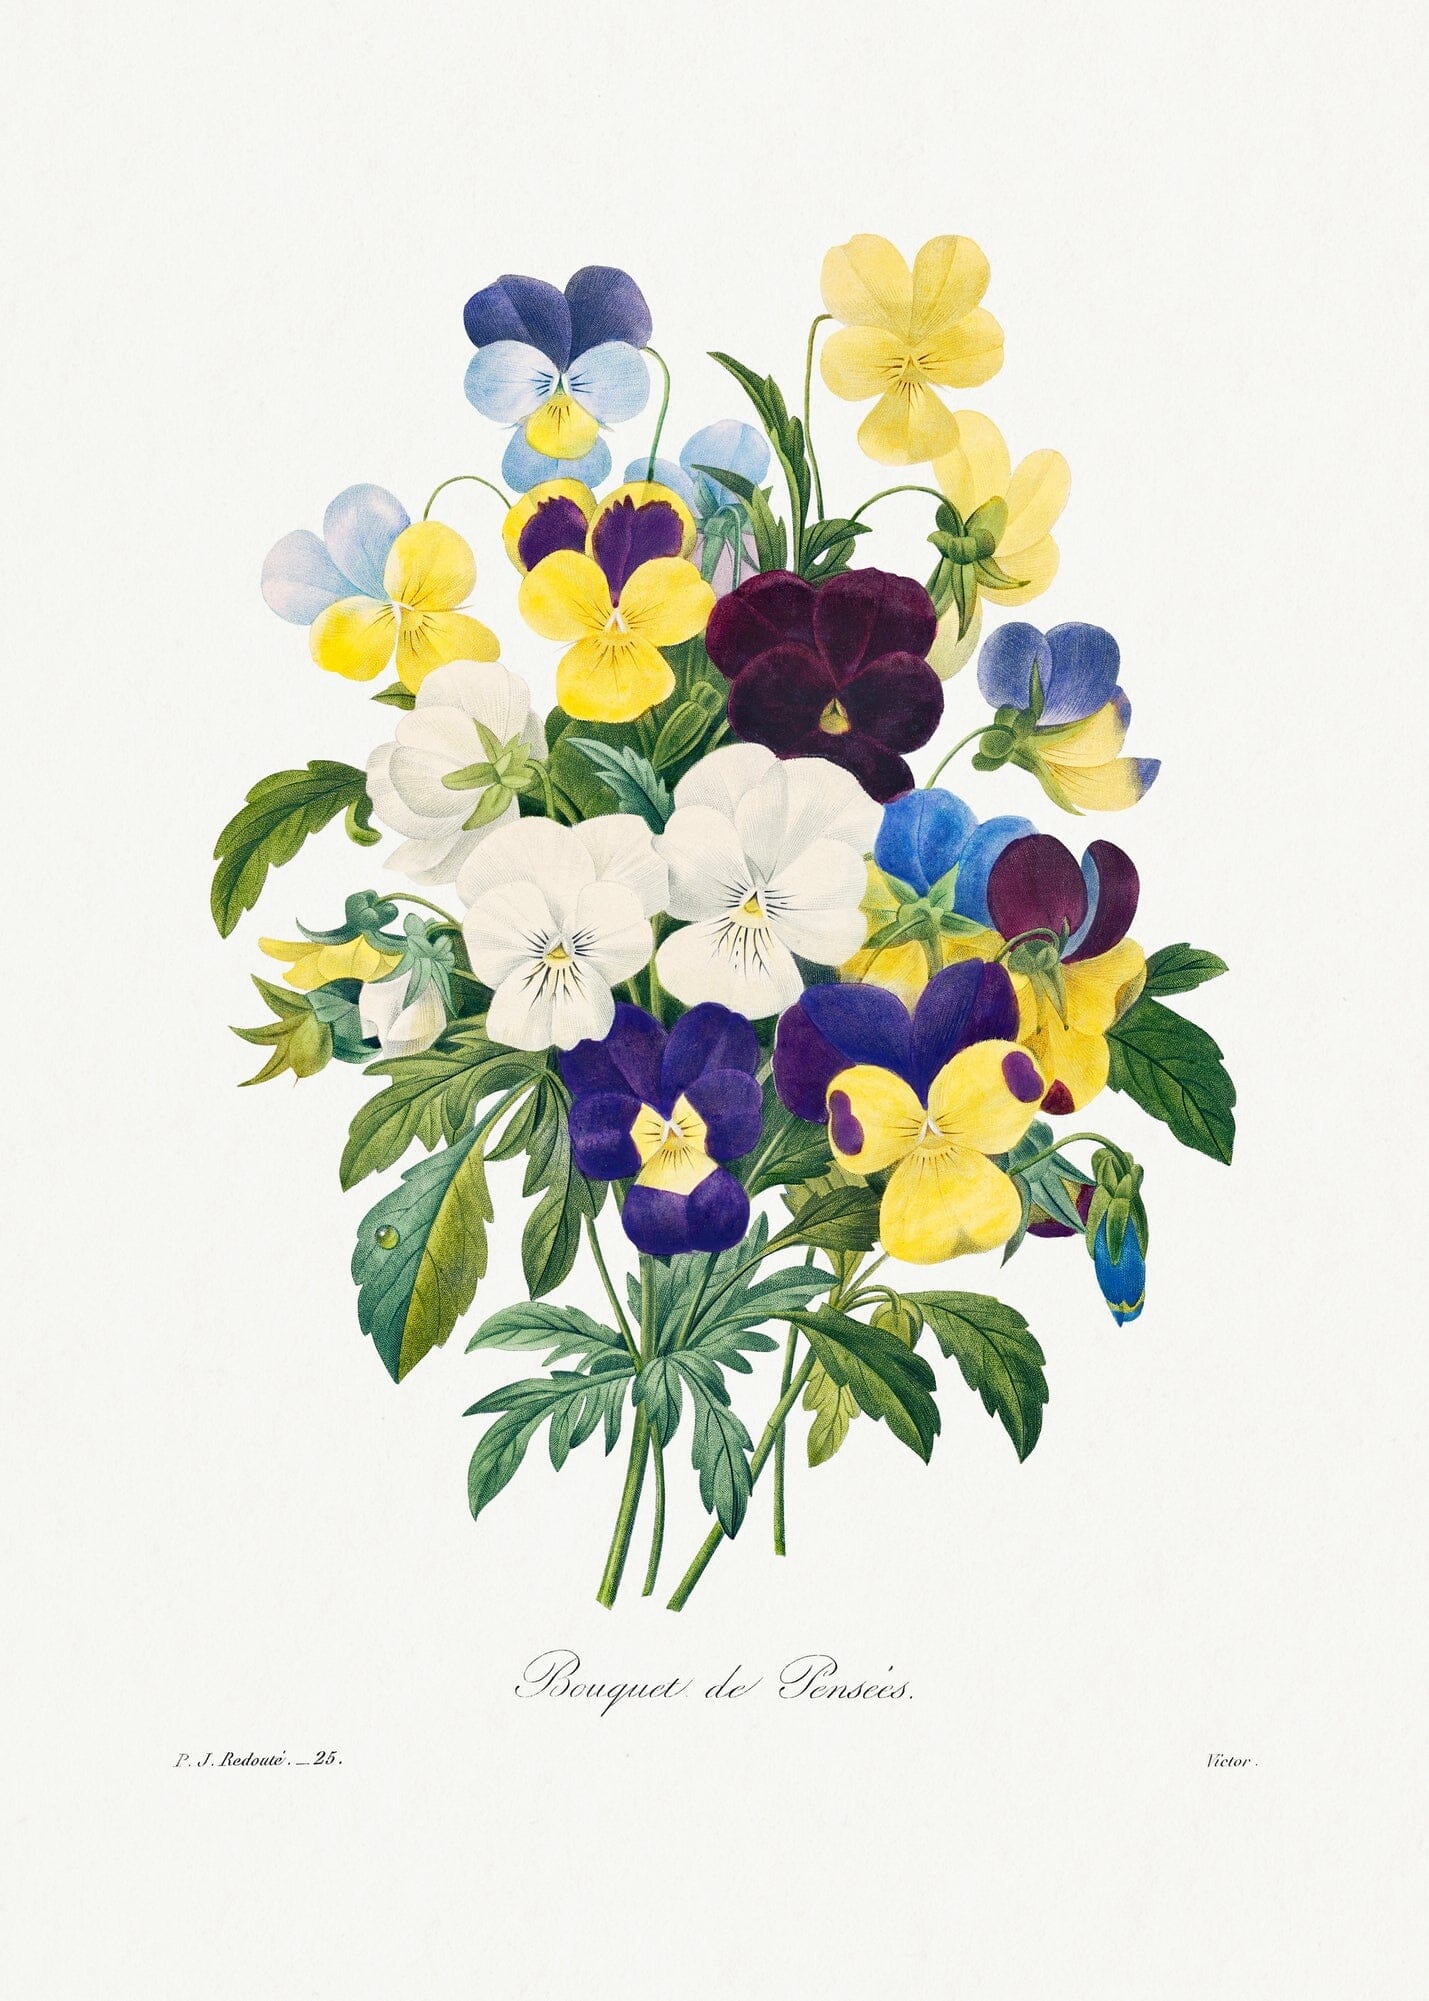 Pansy bouquet (1800s) | Pierre Joseph Redoute prints Posters, Prints, & Visual Artwork The Trumpet Shop Vintage Prints   